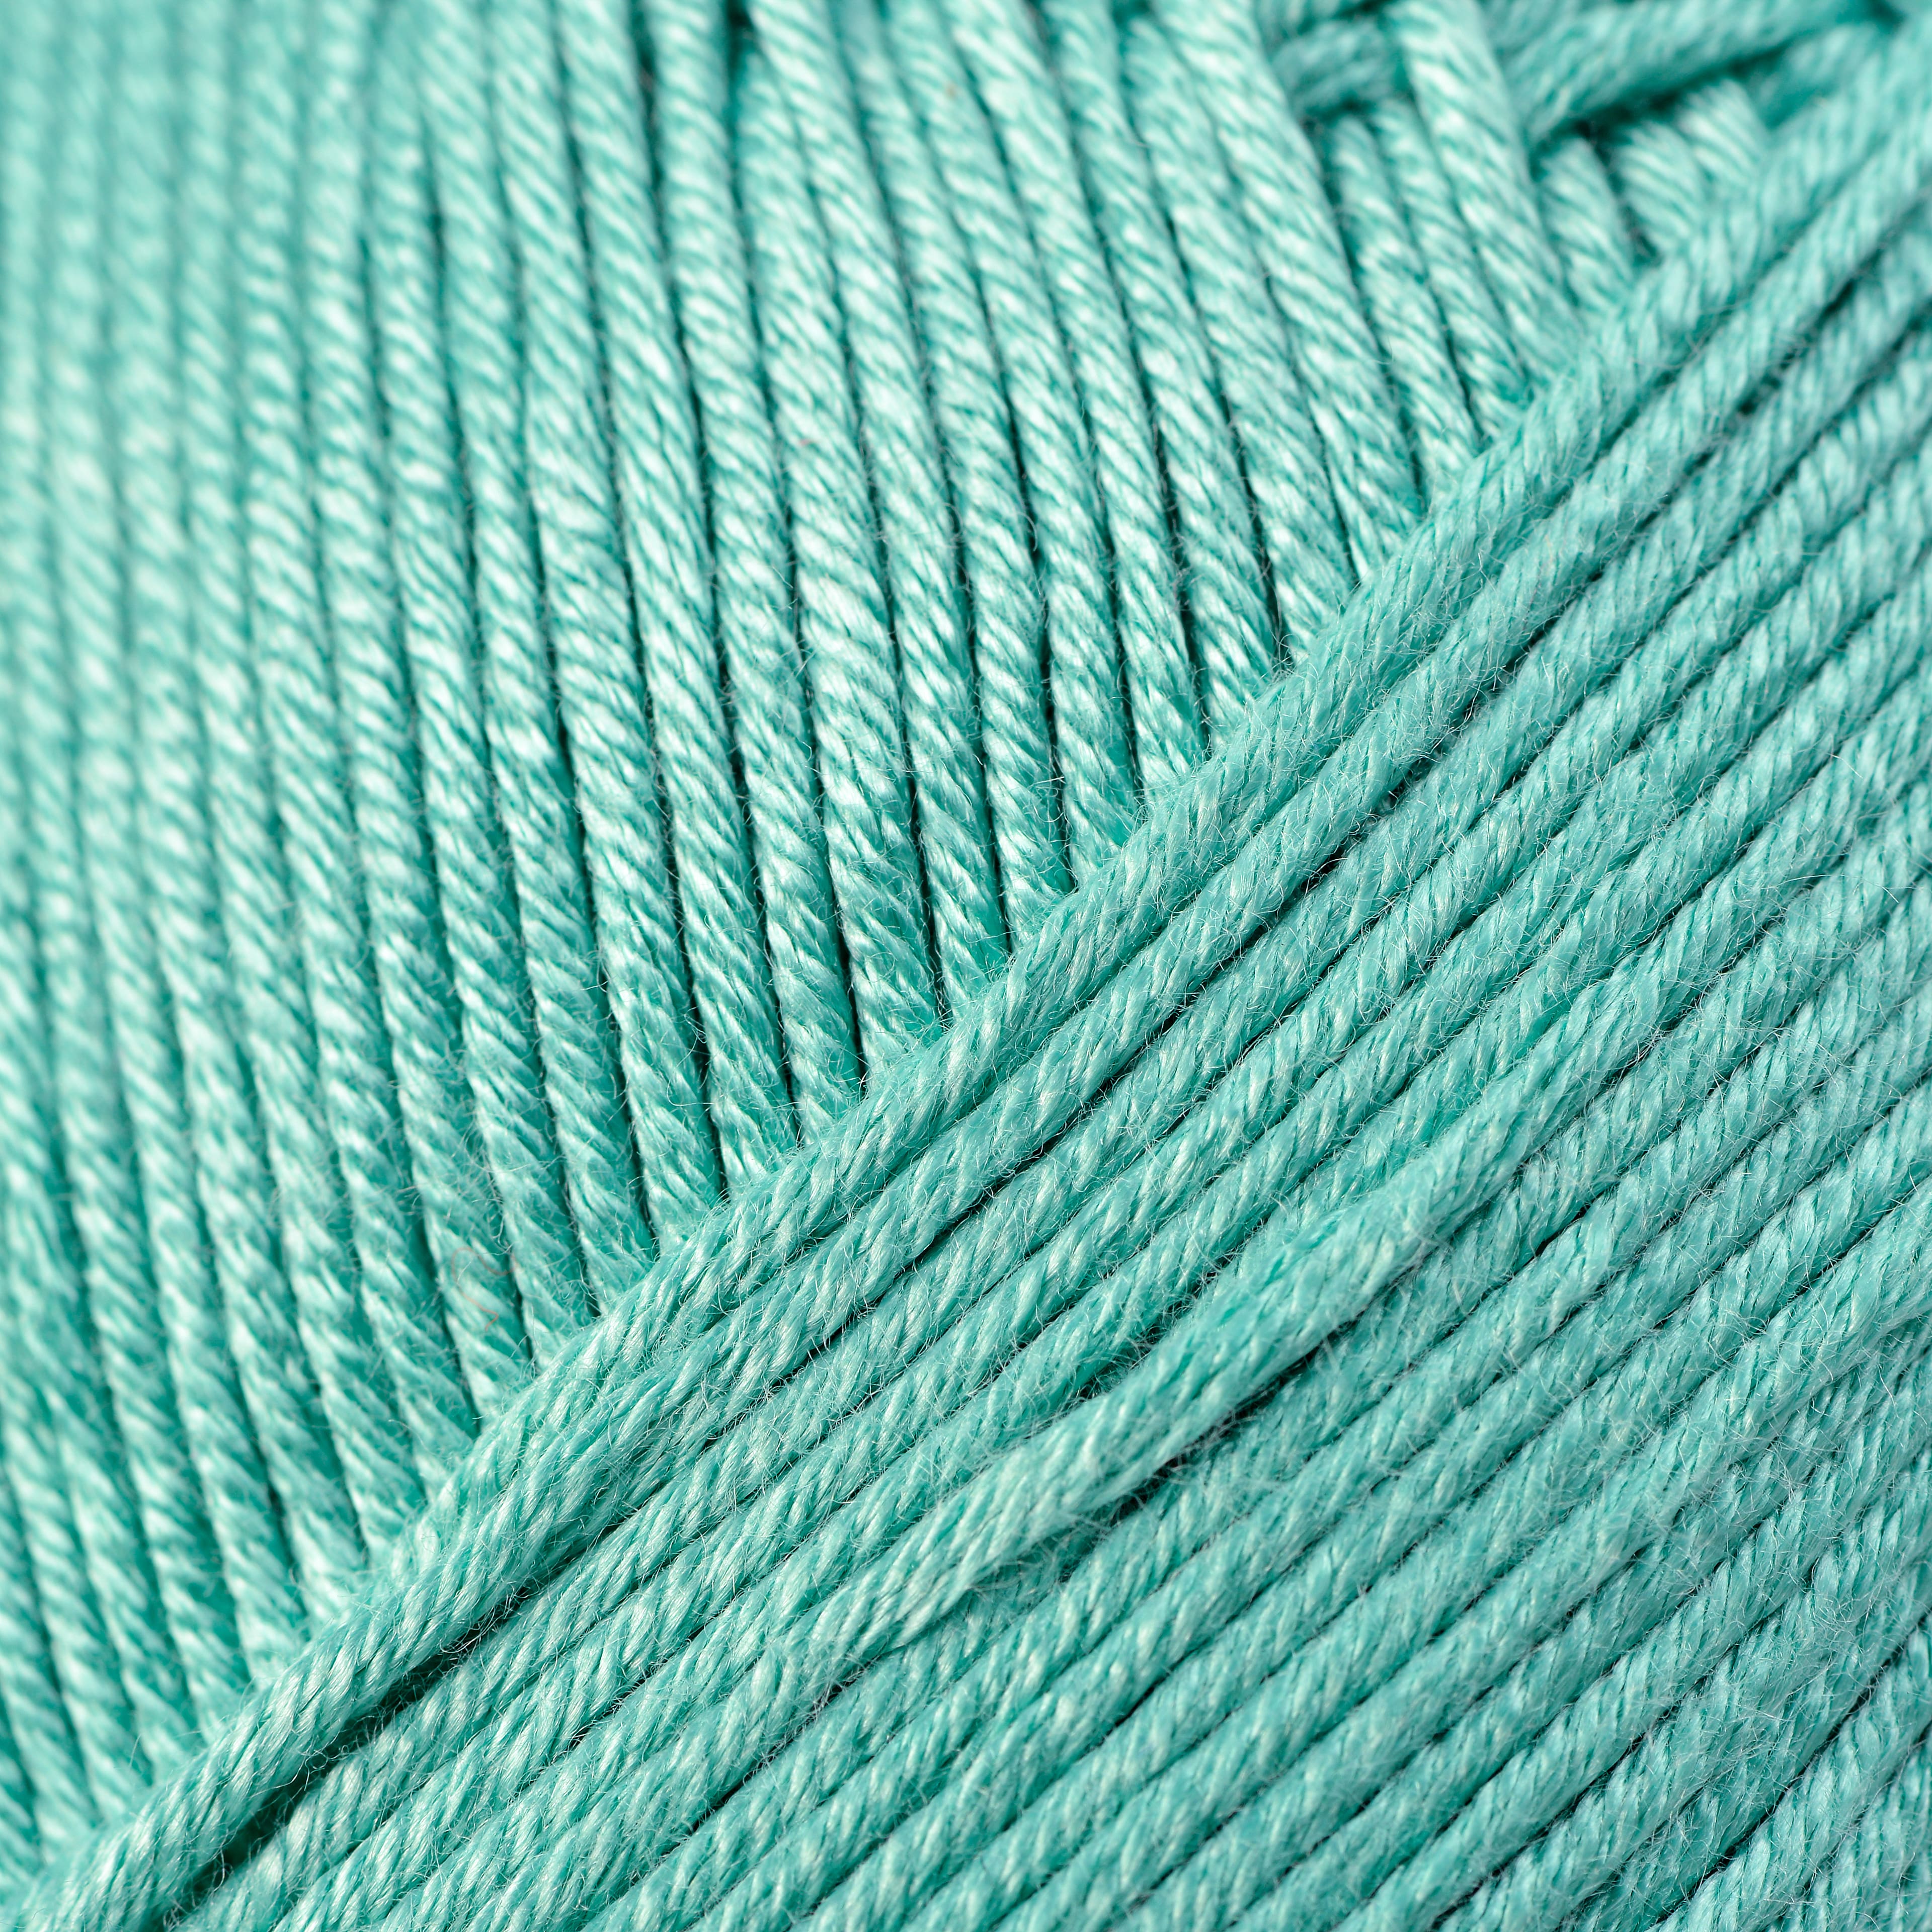 Silky Soft™ Yarn by Loops & Threads®